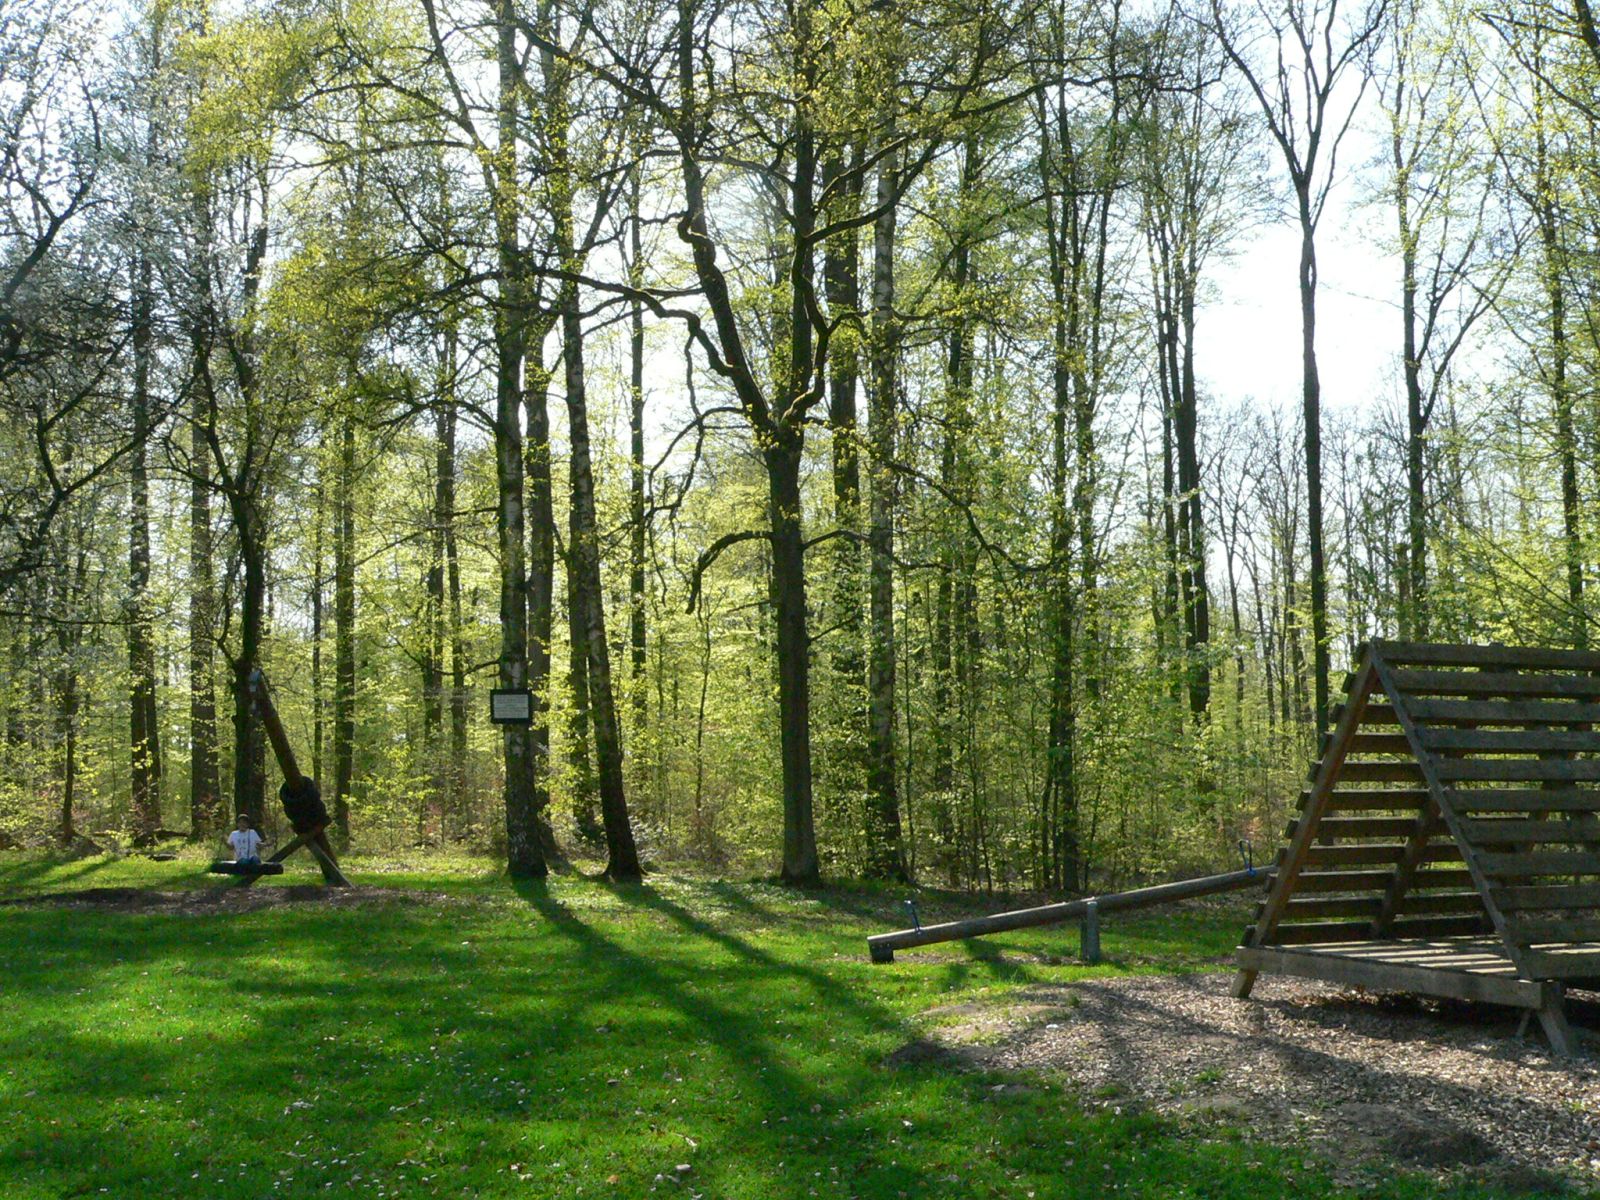  Der Waldspielplatz "Schefenacker" liegt idyllisch im Wald und bietet Platz zum Spielen und Bolzen. 